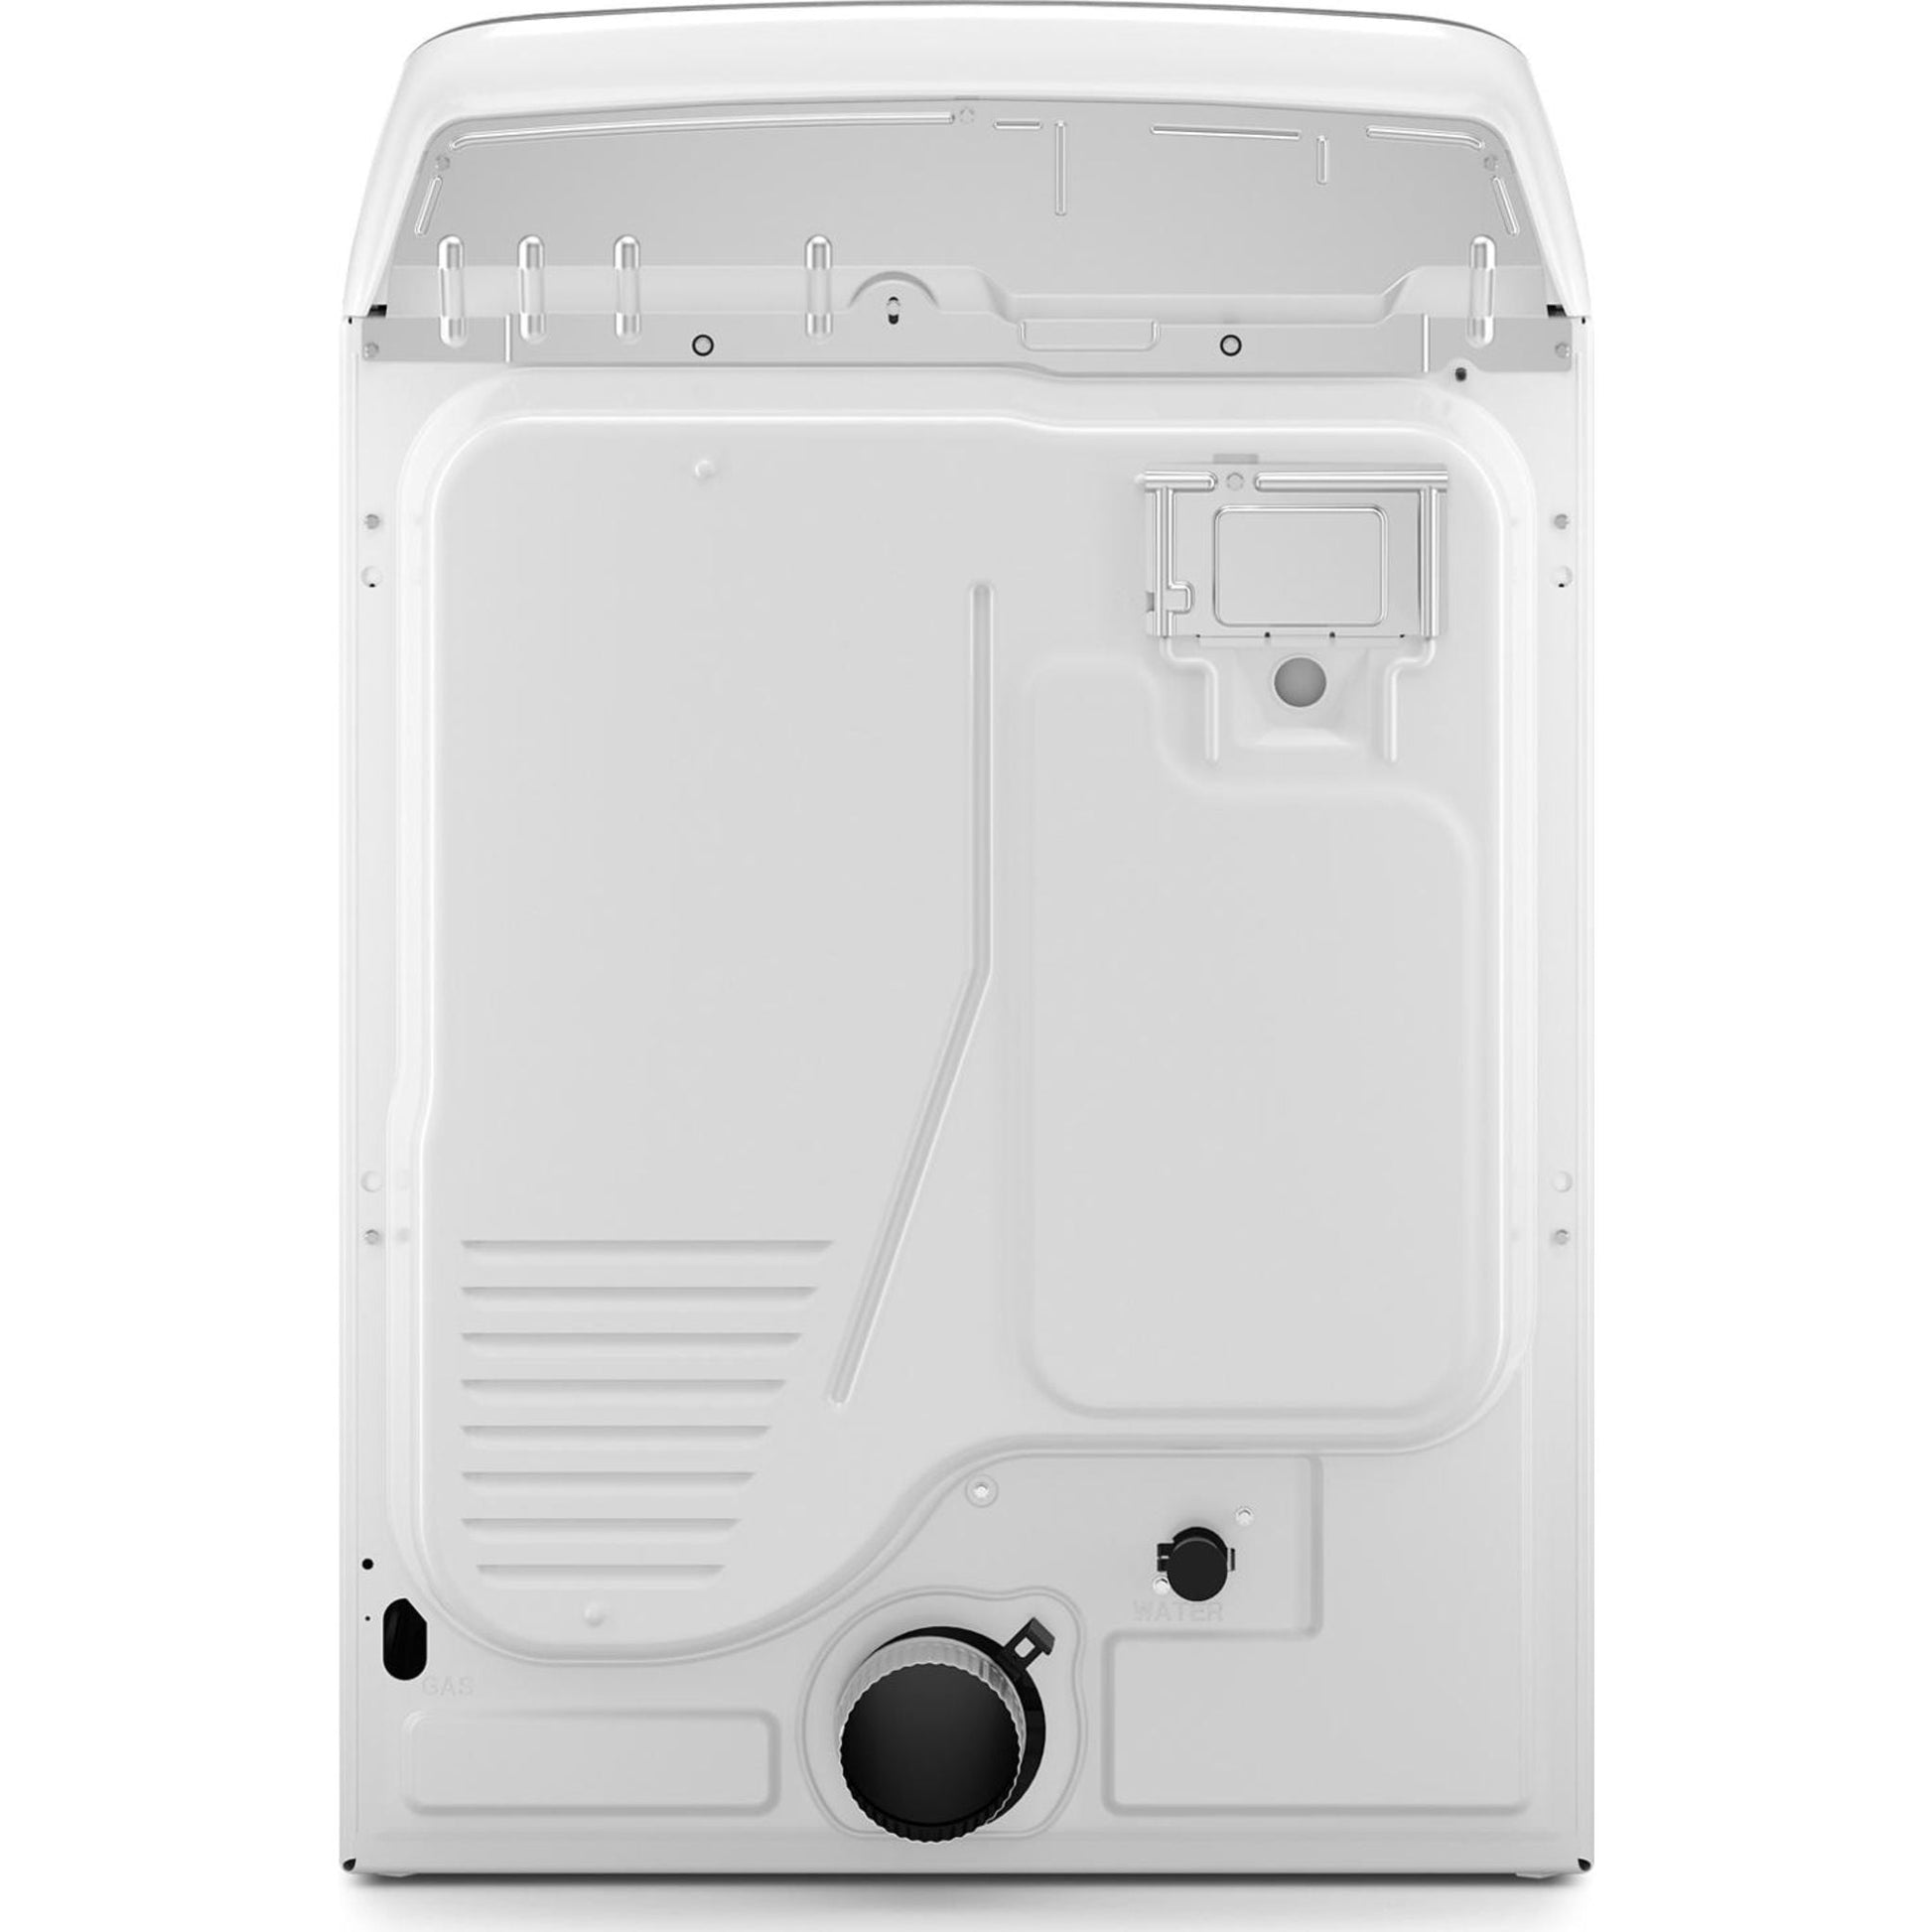 Maytag Dryer (YMED6230HW) - White